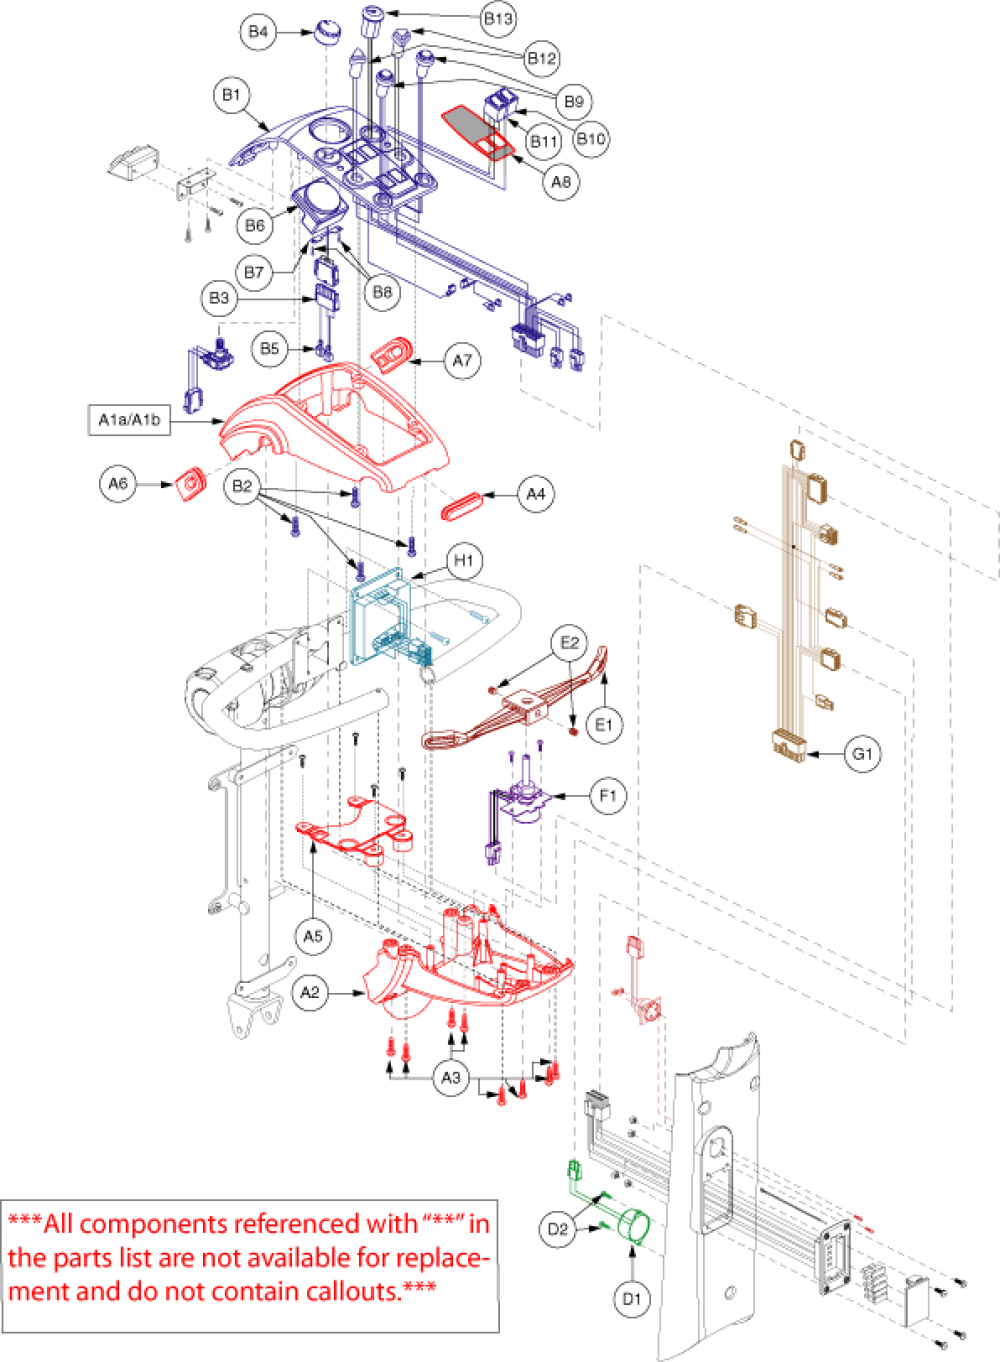 Electronics Assembly - Lr Console parts diagram